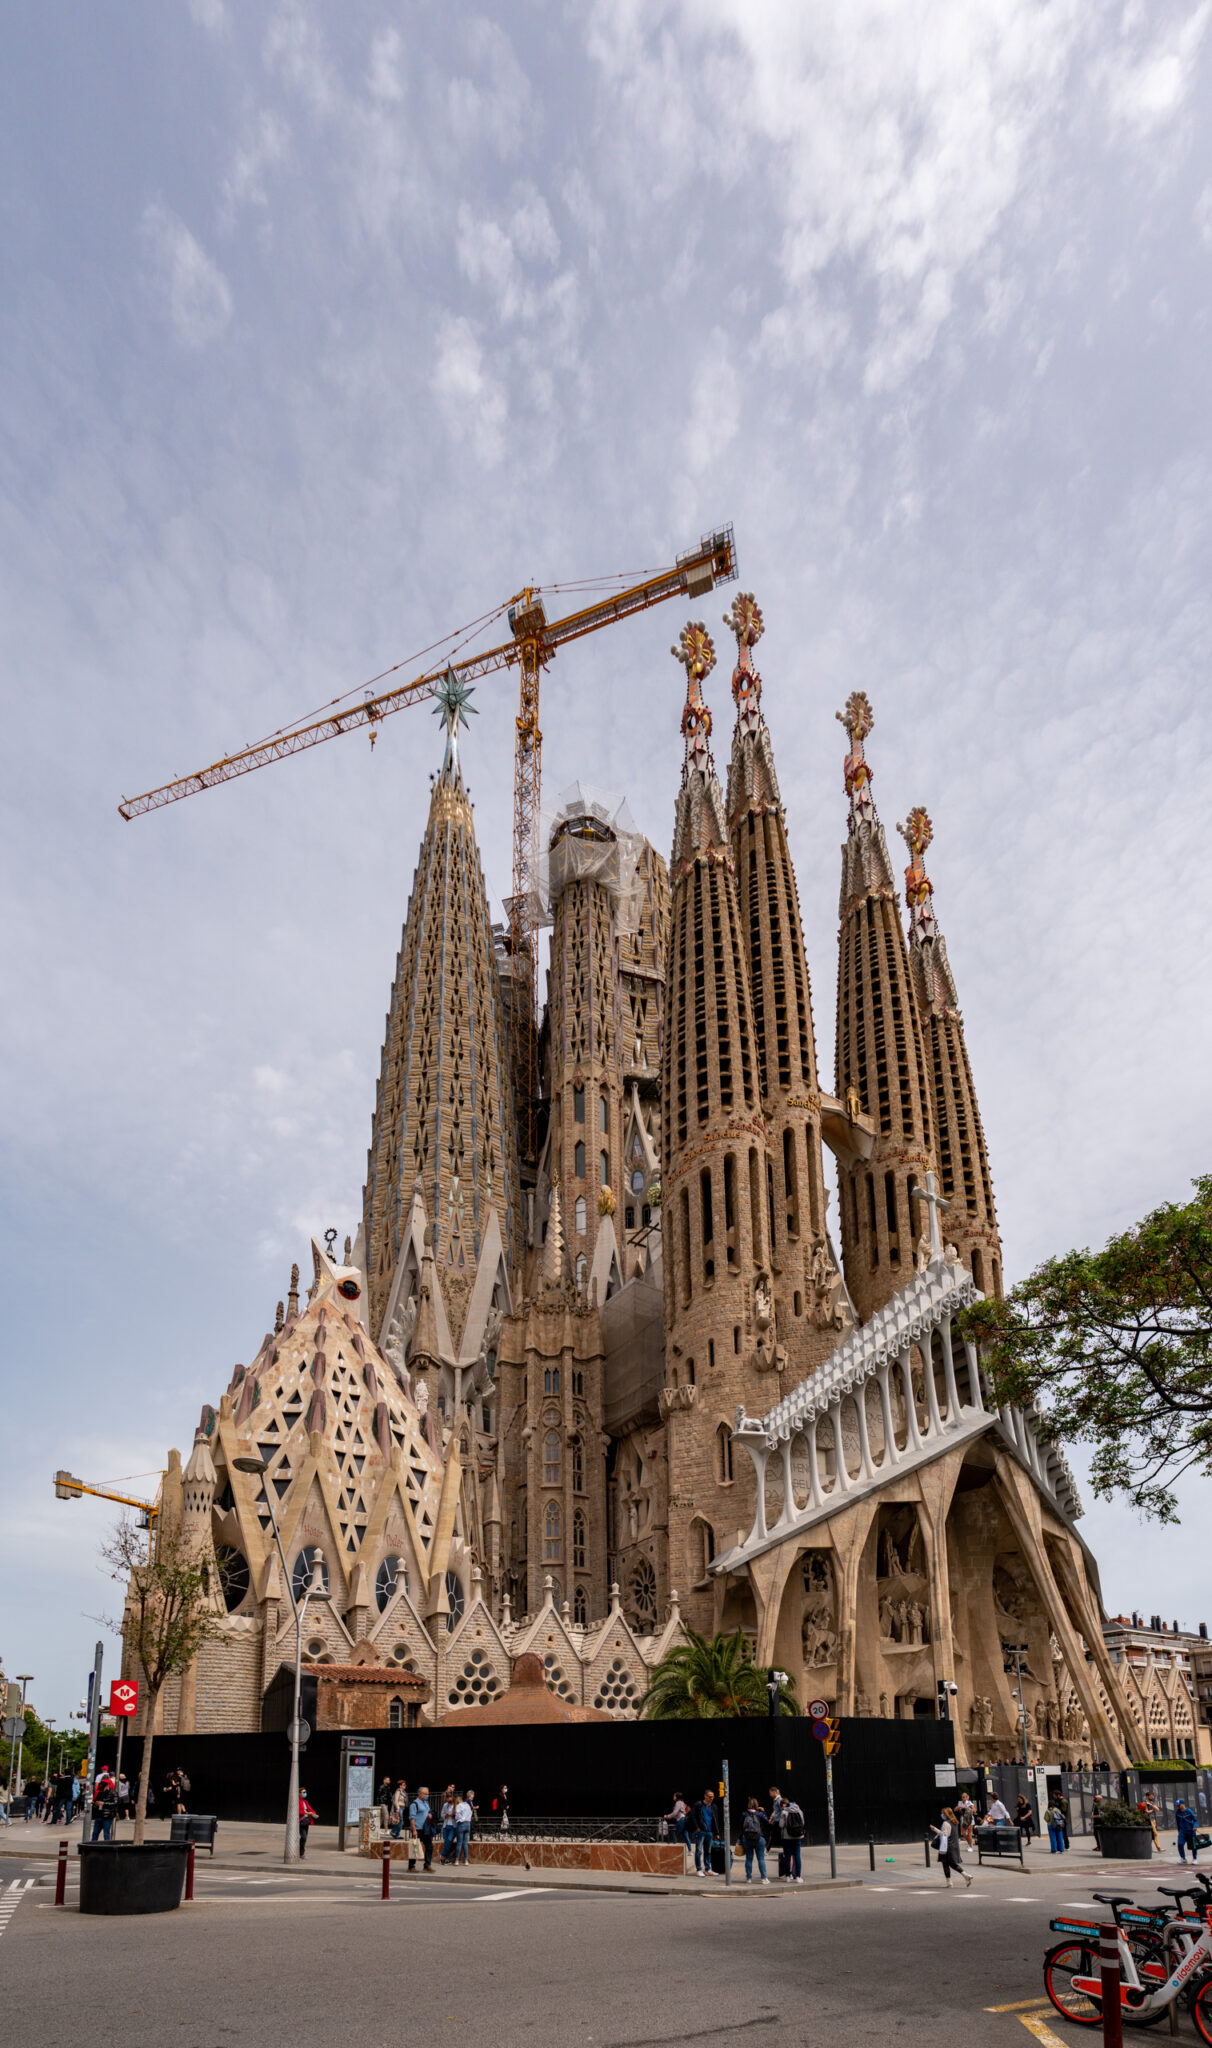 Sagrada Familia von Gaudi, bald fertig